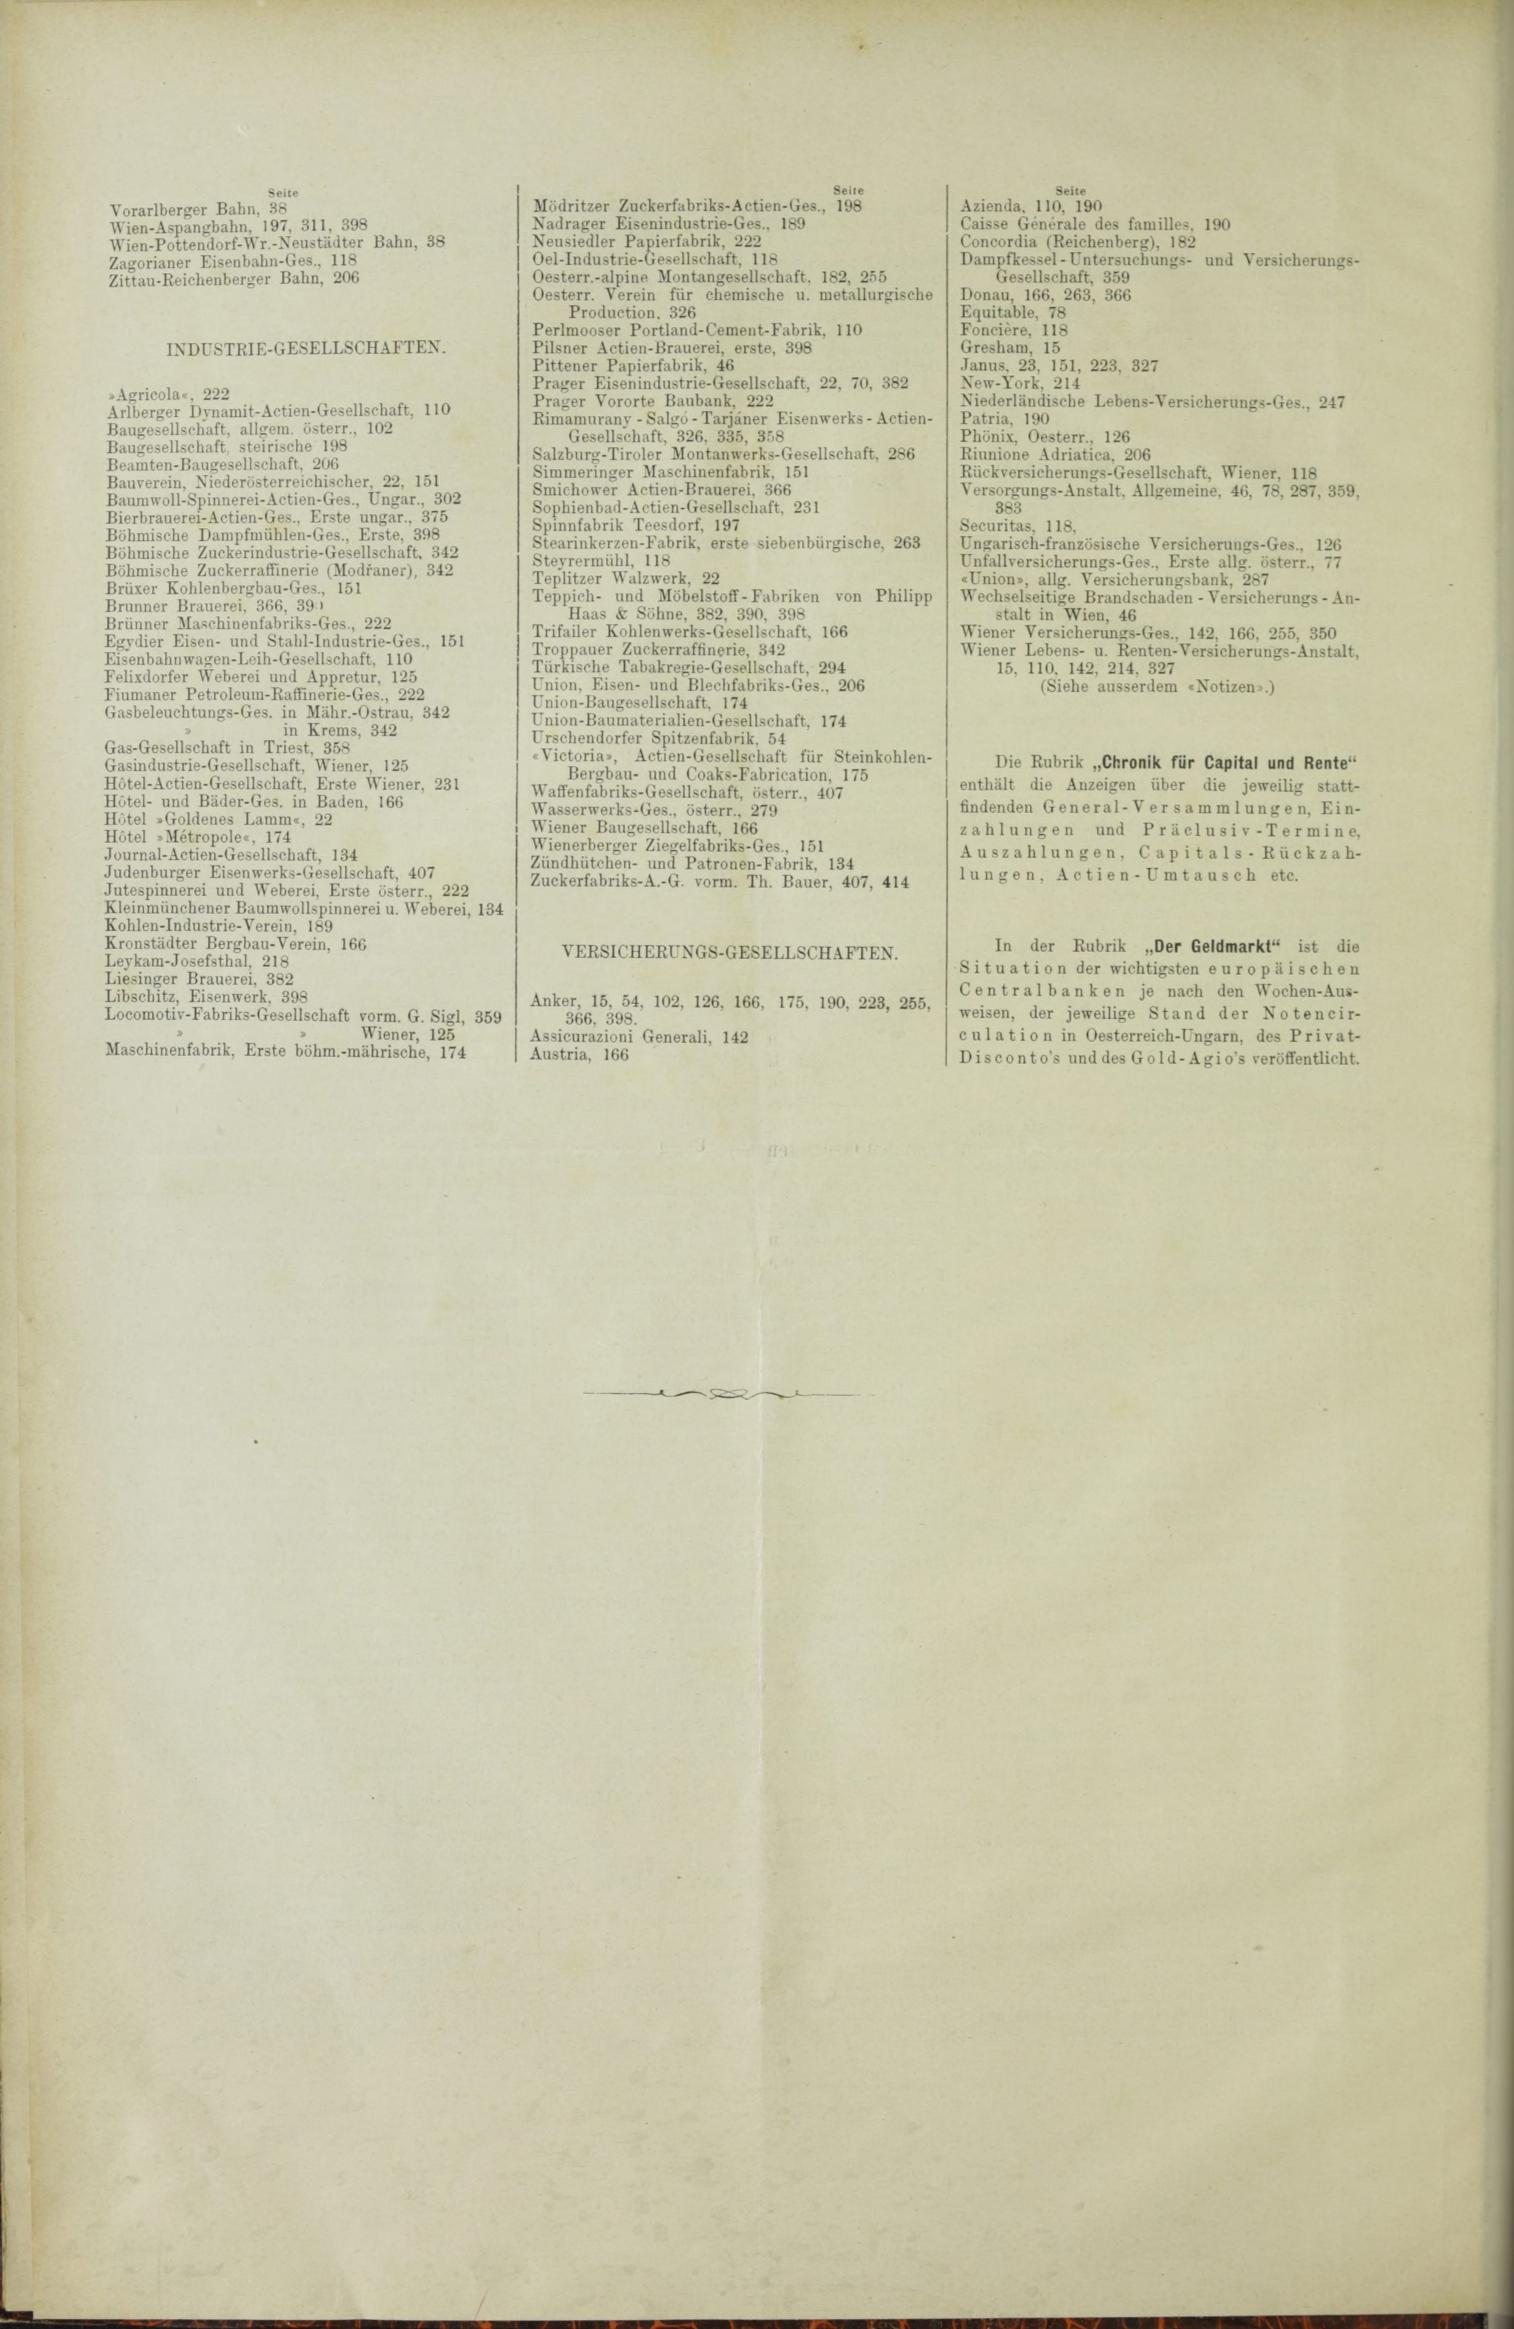 Der Tresor 23.12.1886 - Seite 12